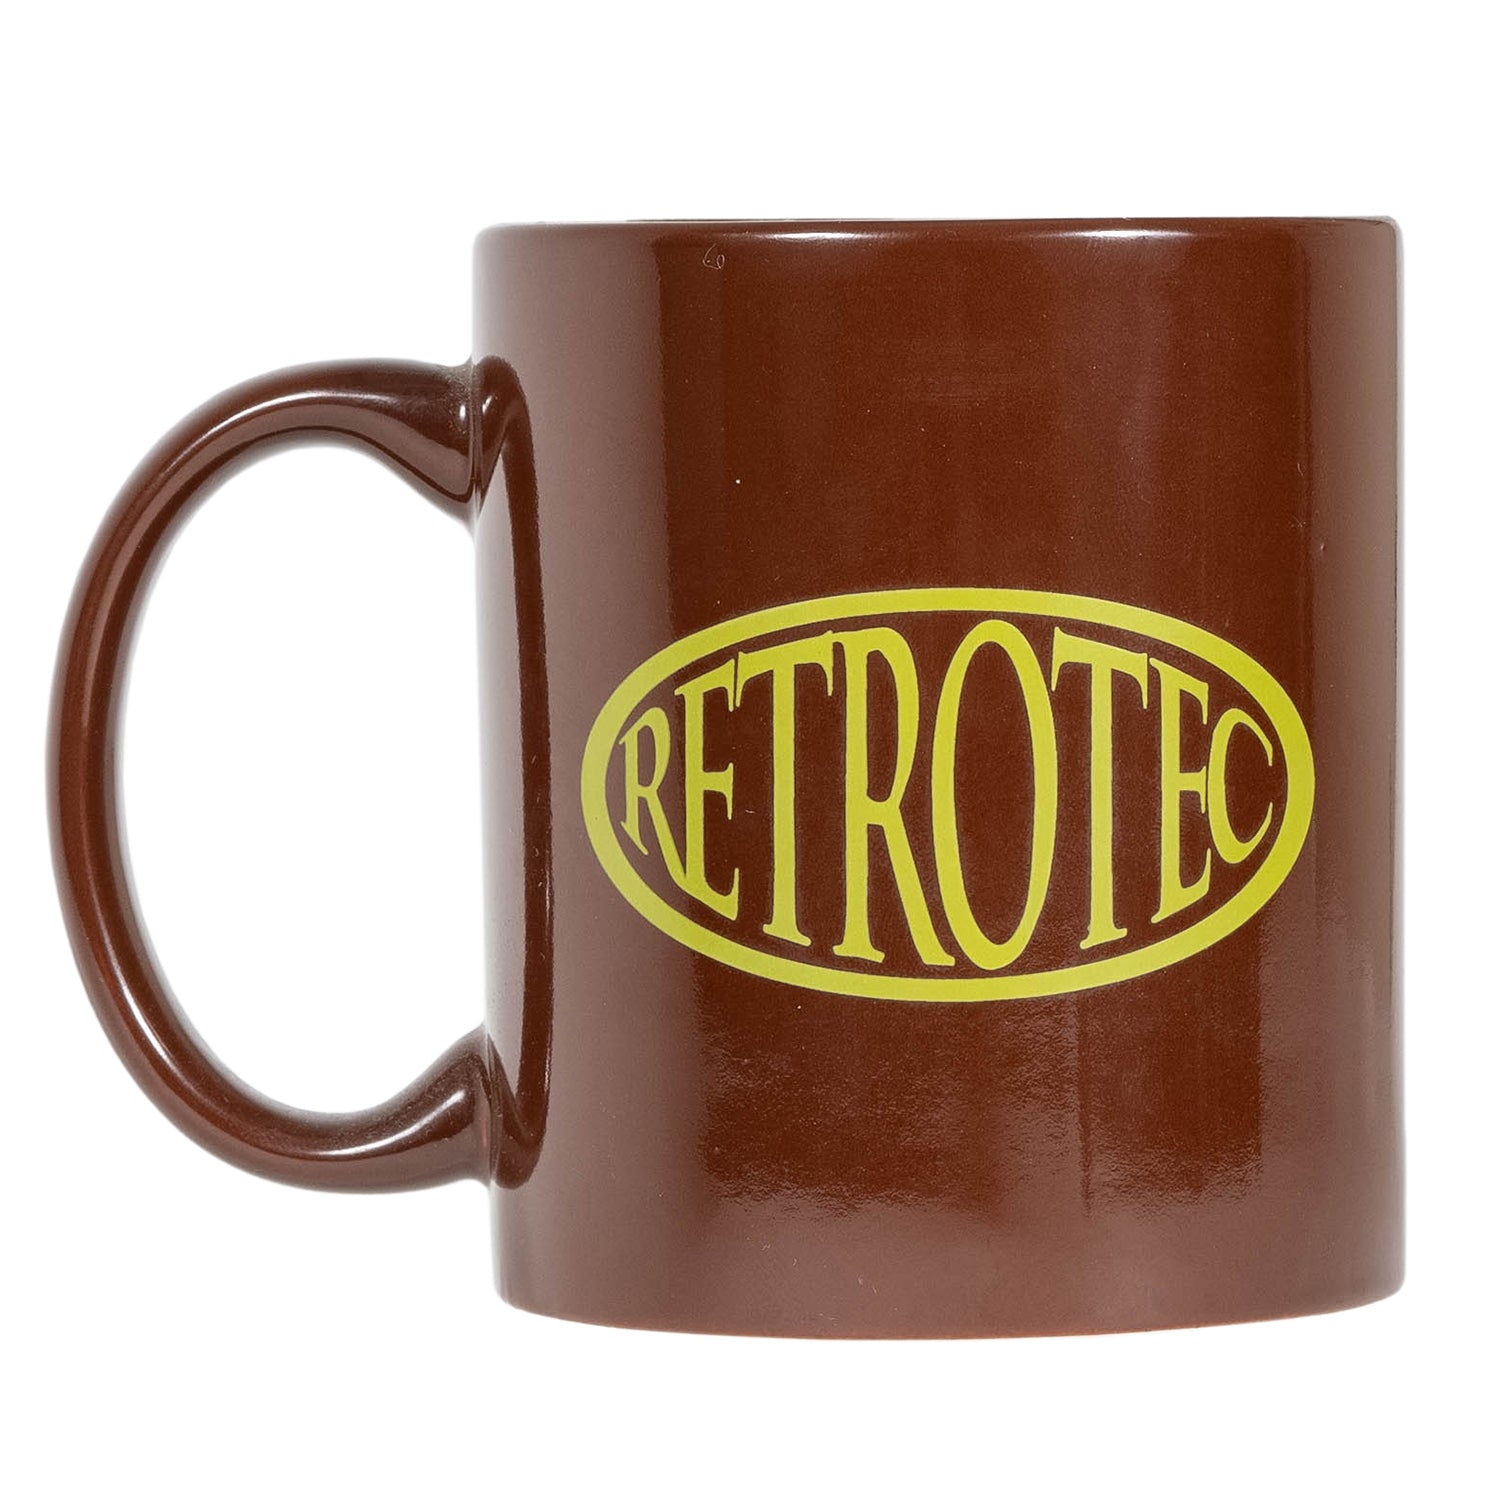 RETROTEC Mug Cup